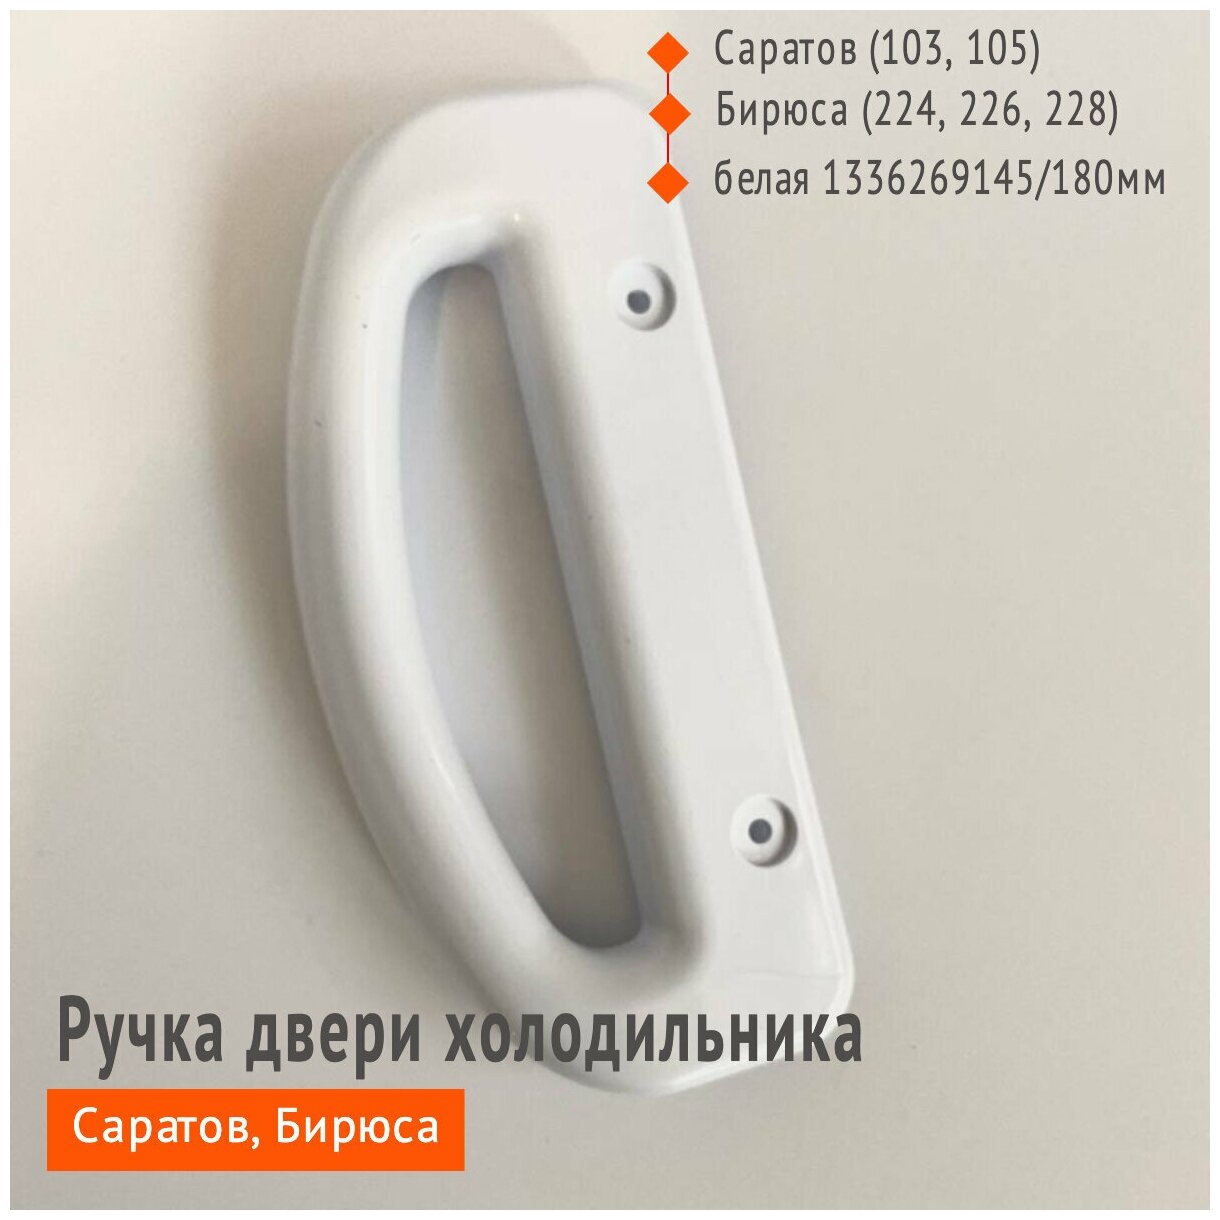 Ручка двери для холодильника Бирюса, Саратов расположение универсальное, цвет белый